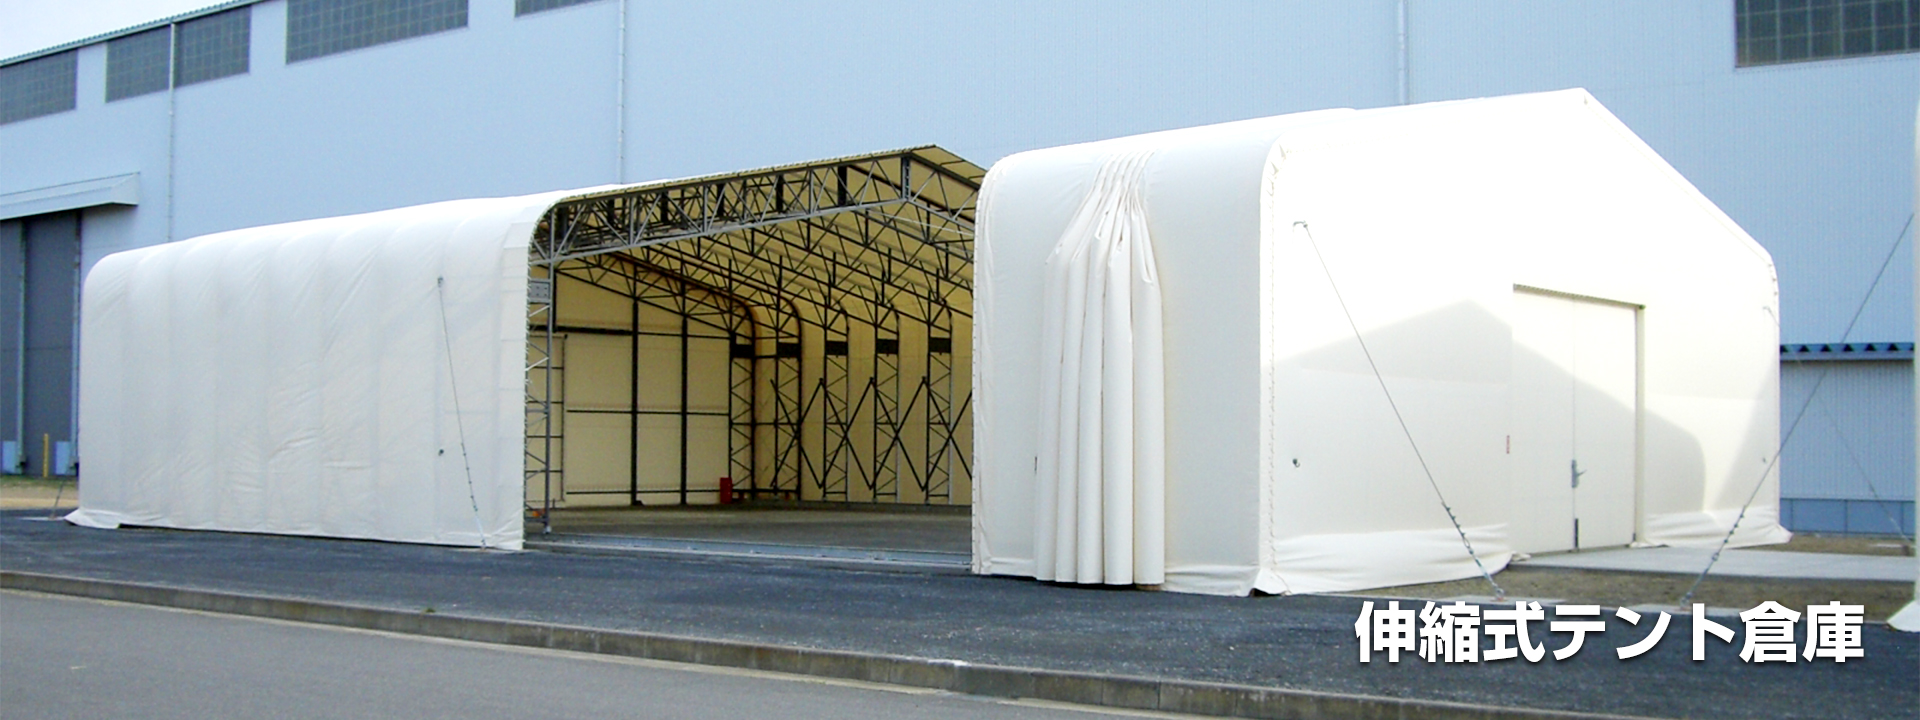 伸縮式テント倉庫